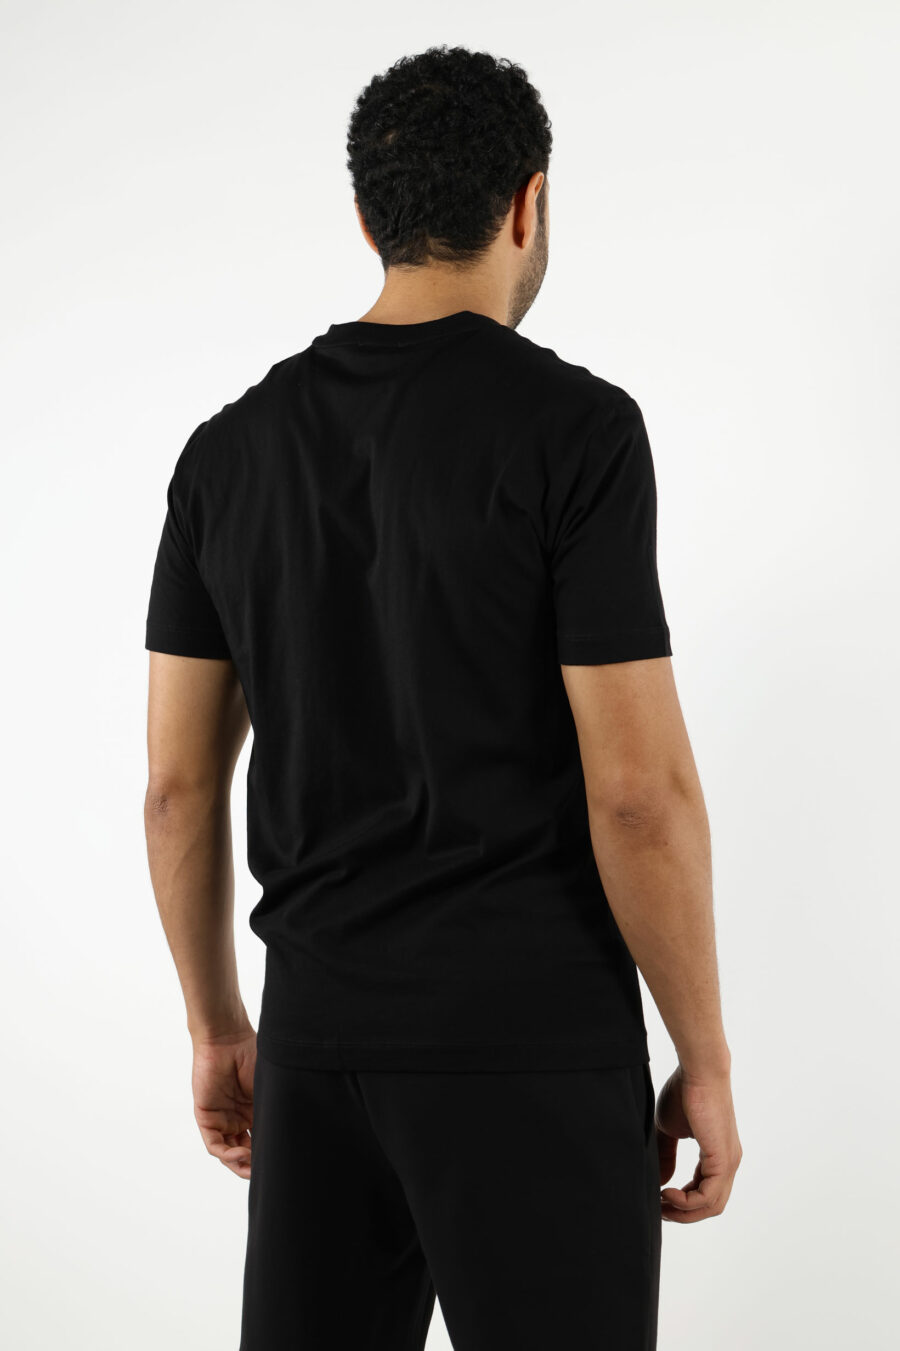 Camiseta negra con maxilogo "lux identity" en degradé - 110865